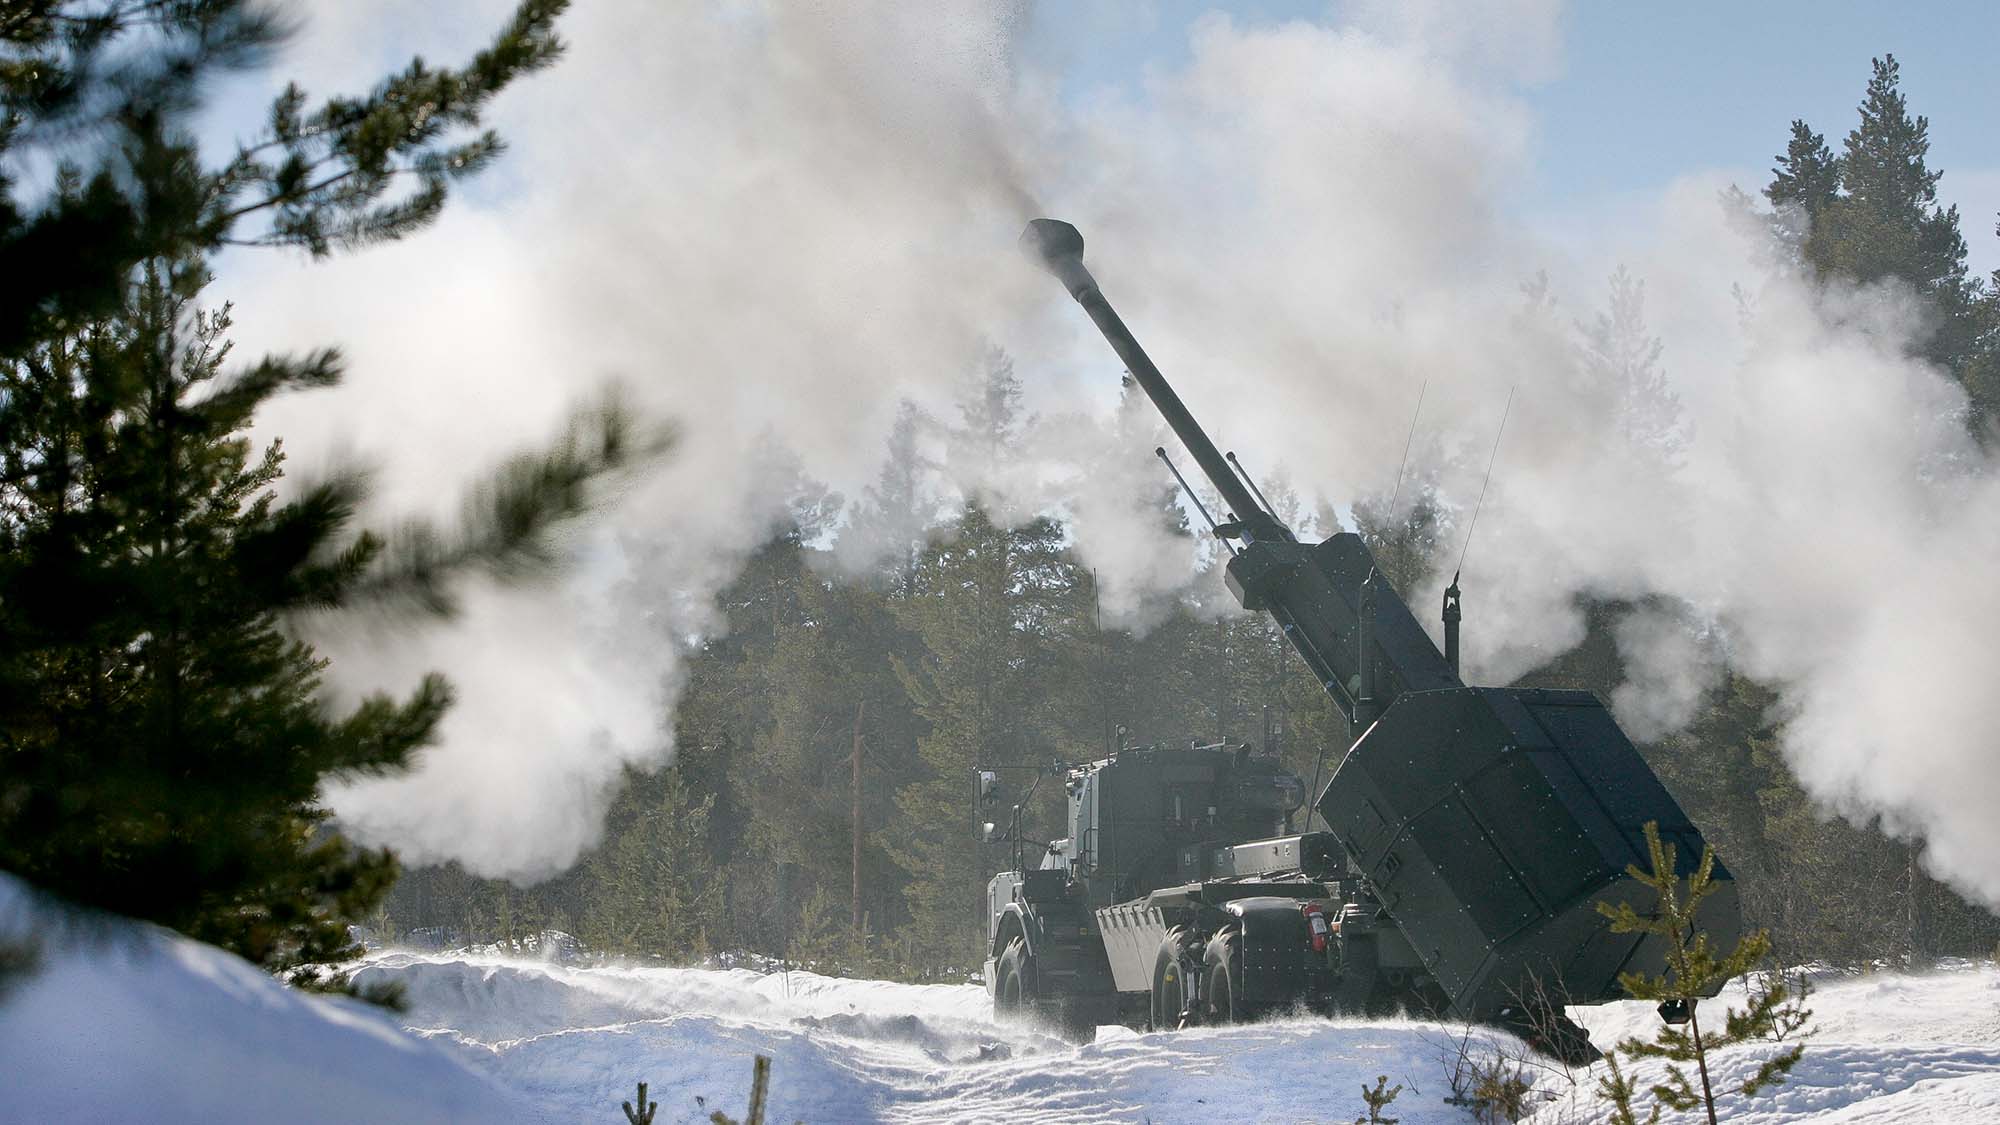 Wielka Brytania kupuje od Szwecji 14 jednostek artylerii samobieżnej Archer. Zastąpią one działa AS-90, które zostaną przekazane na Ukrainę